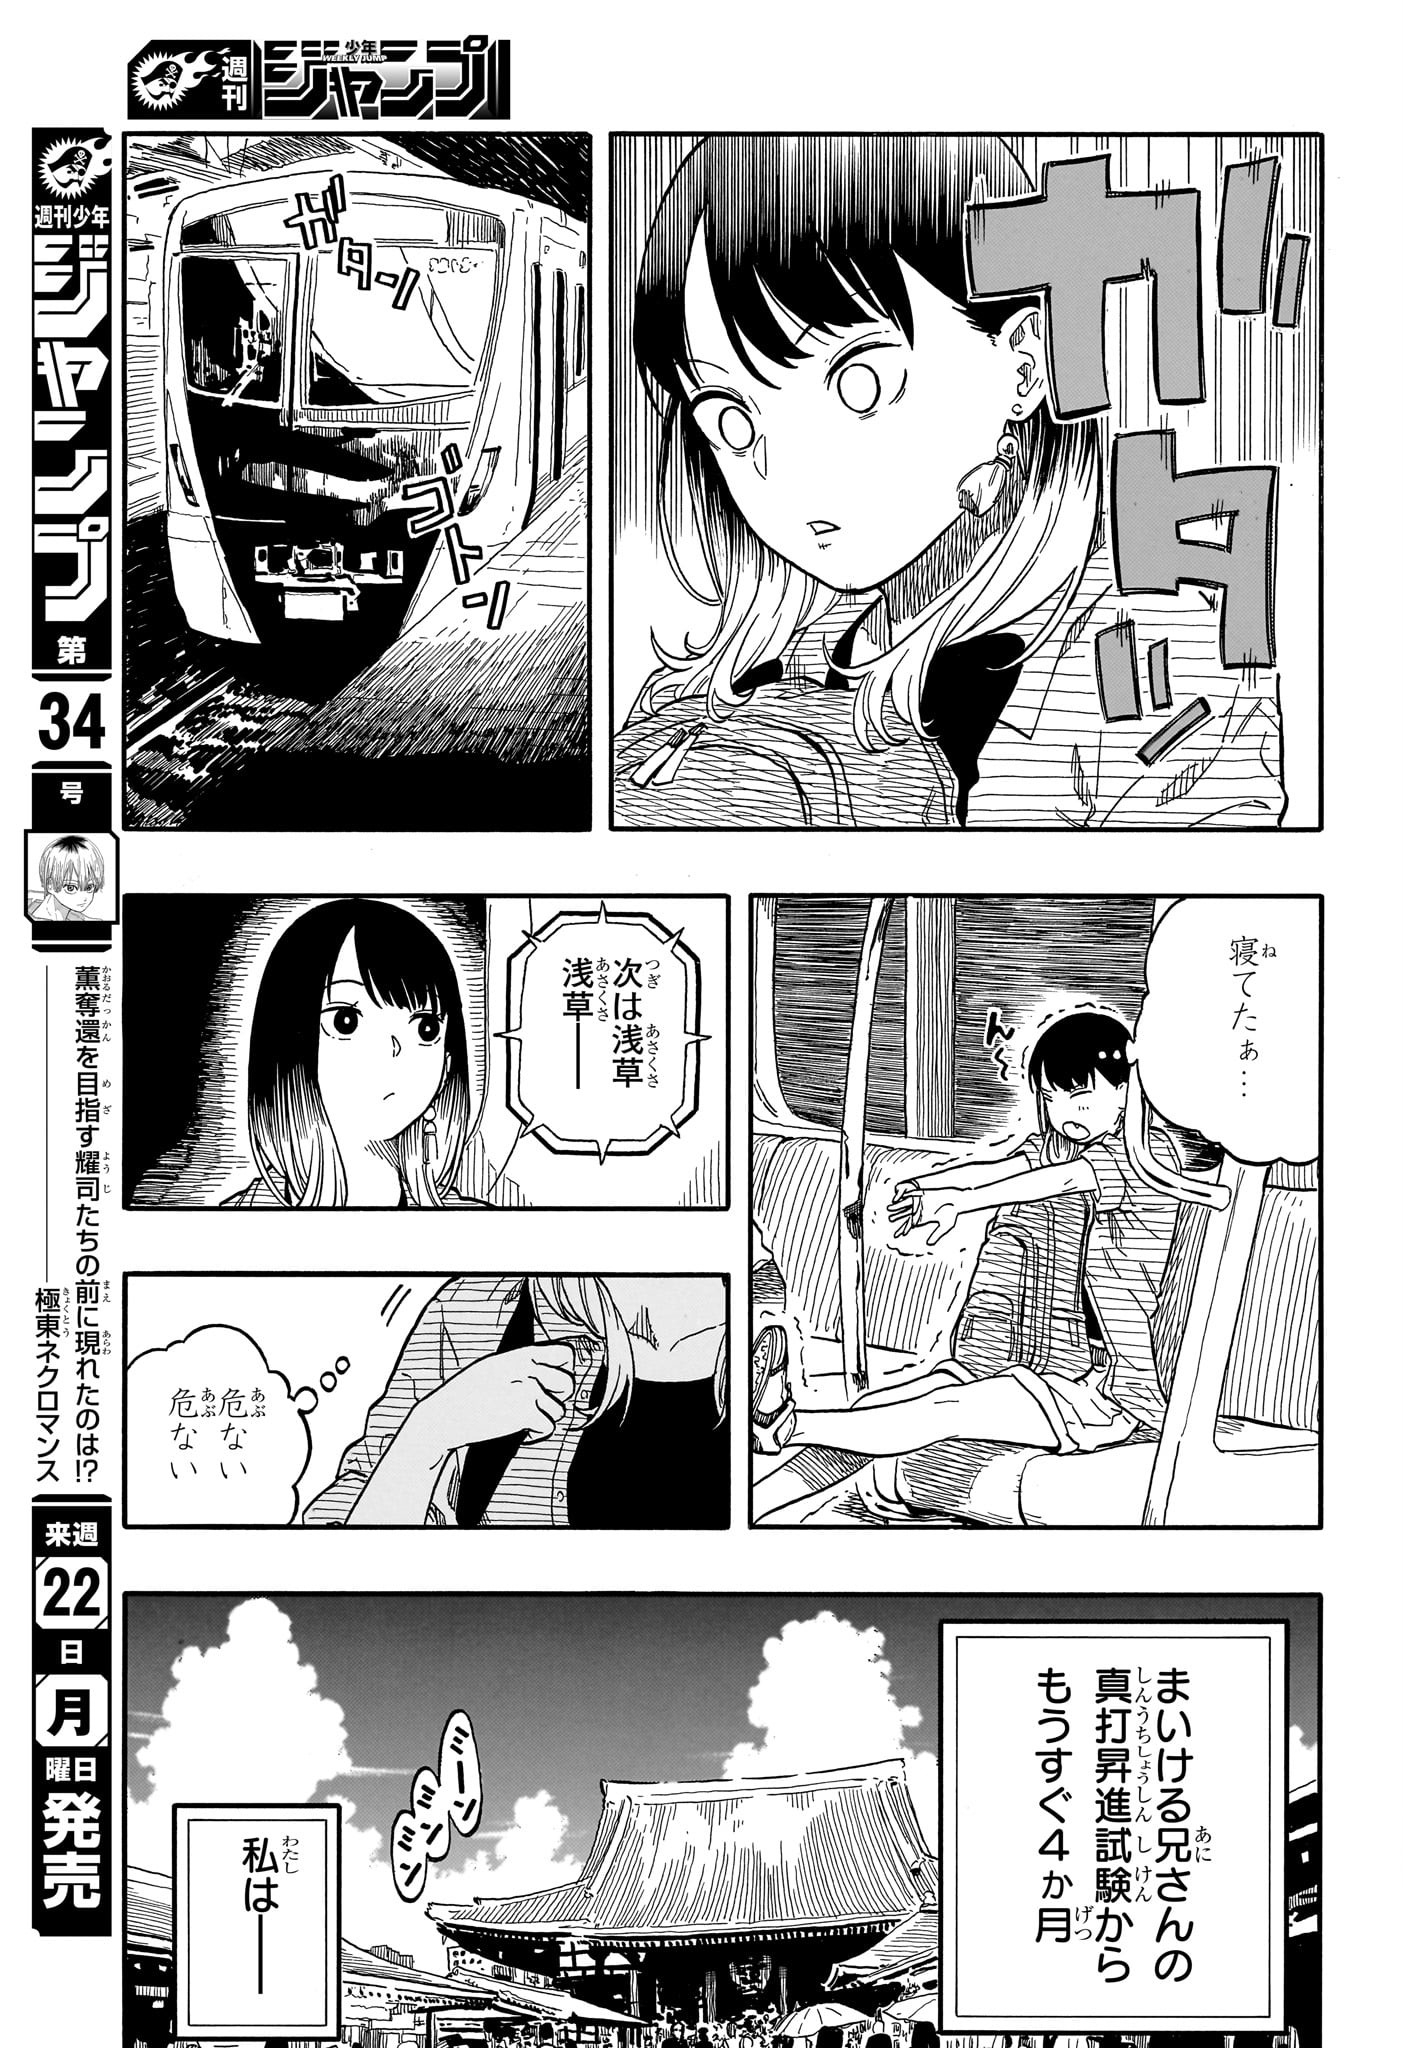 Akane-Banashi - Chapter 118 - Page 11